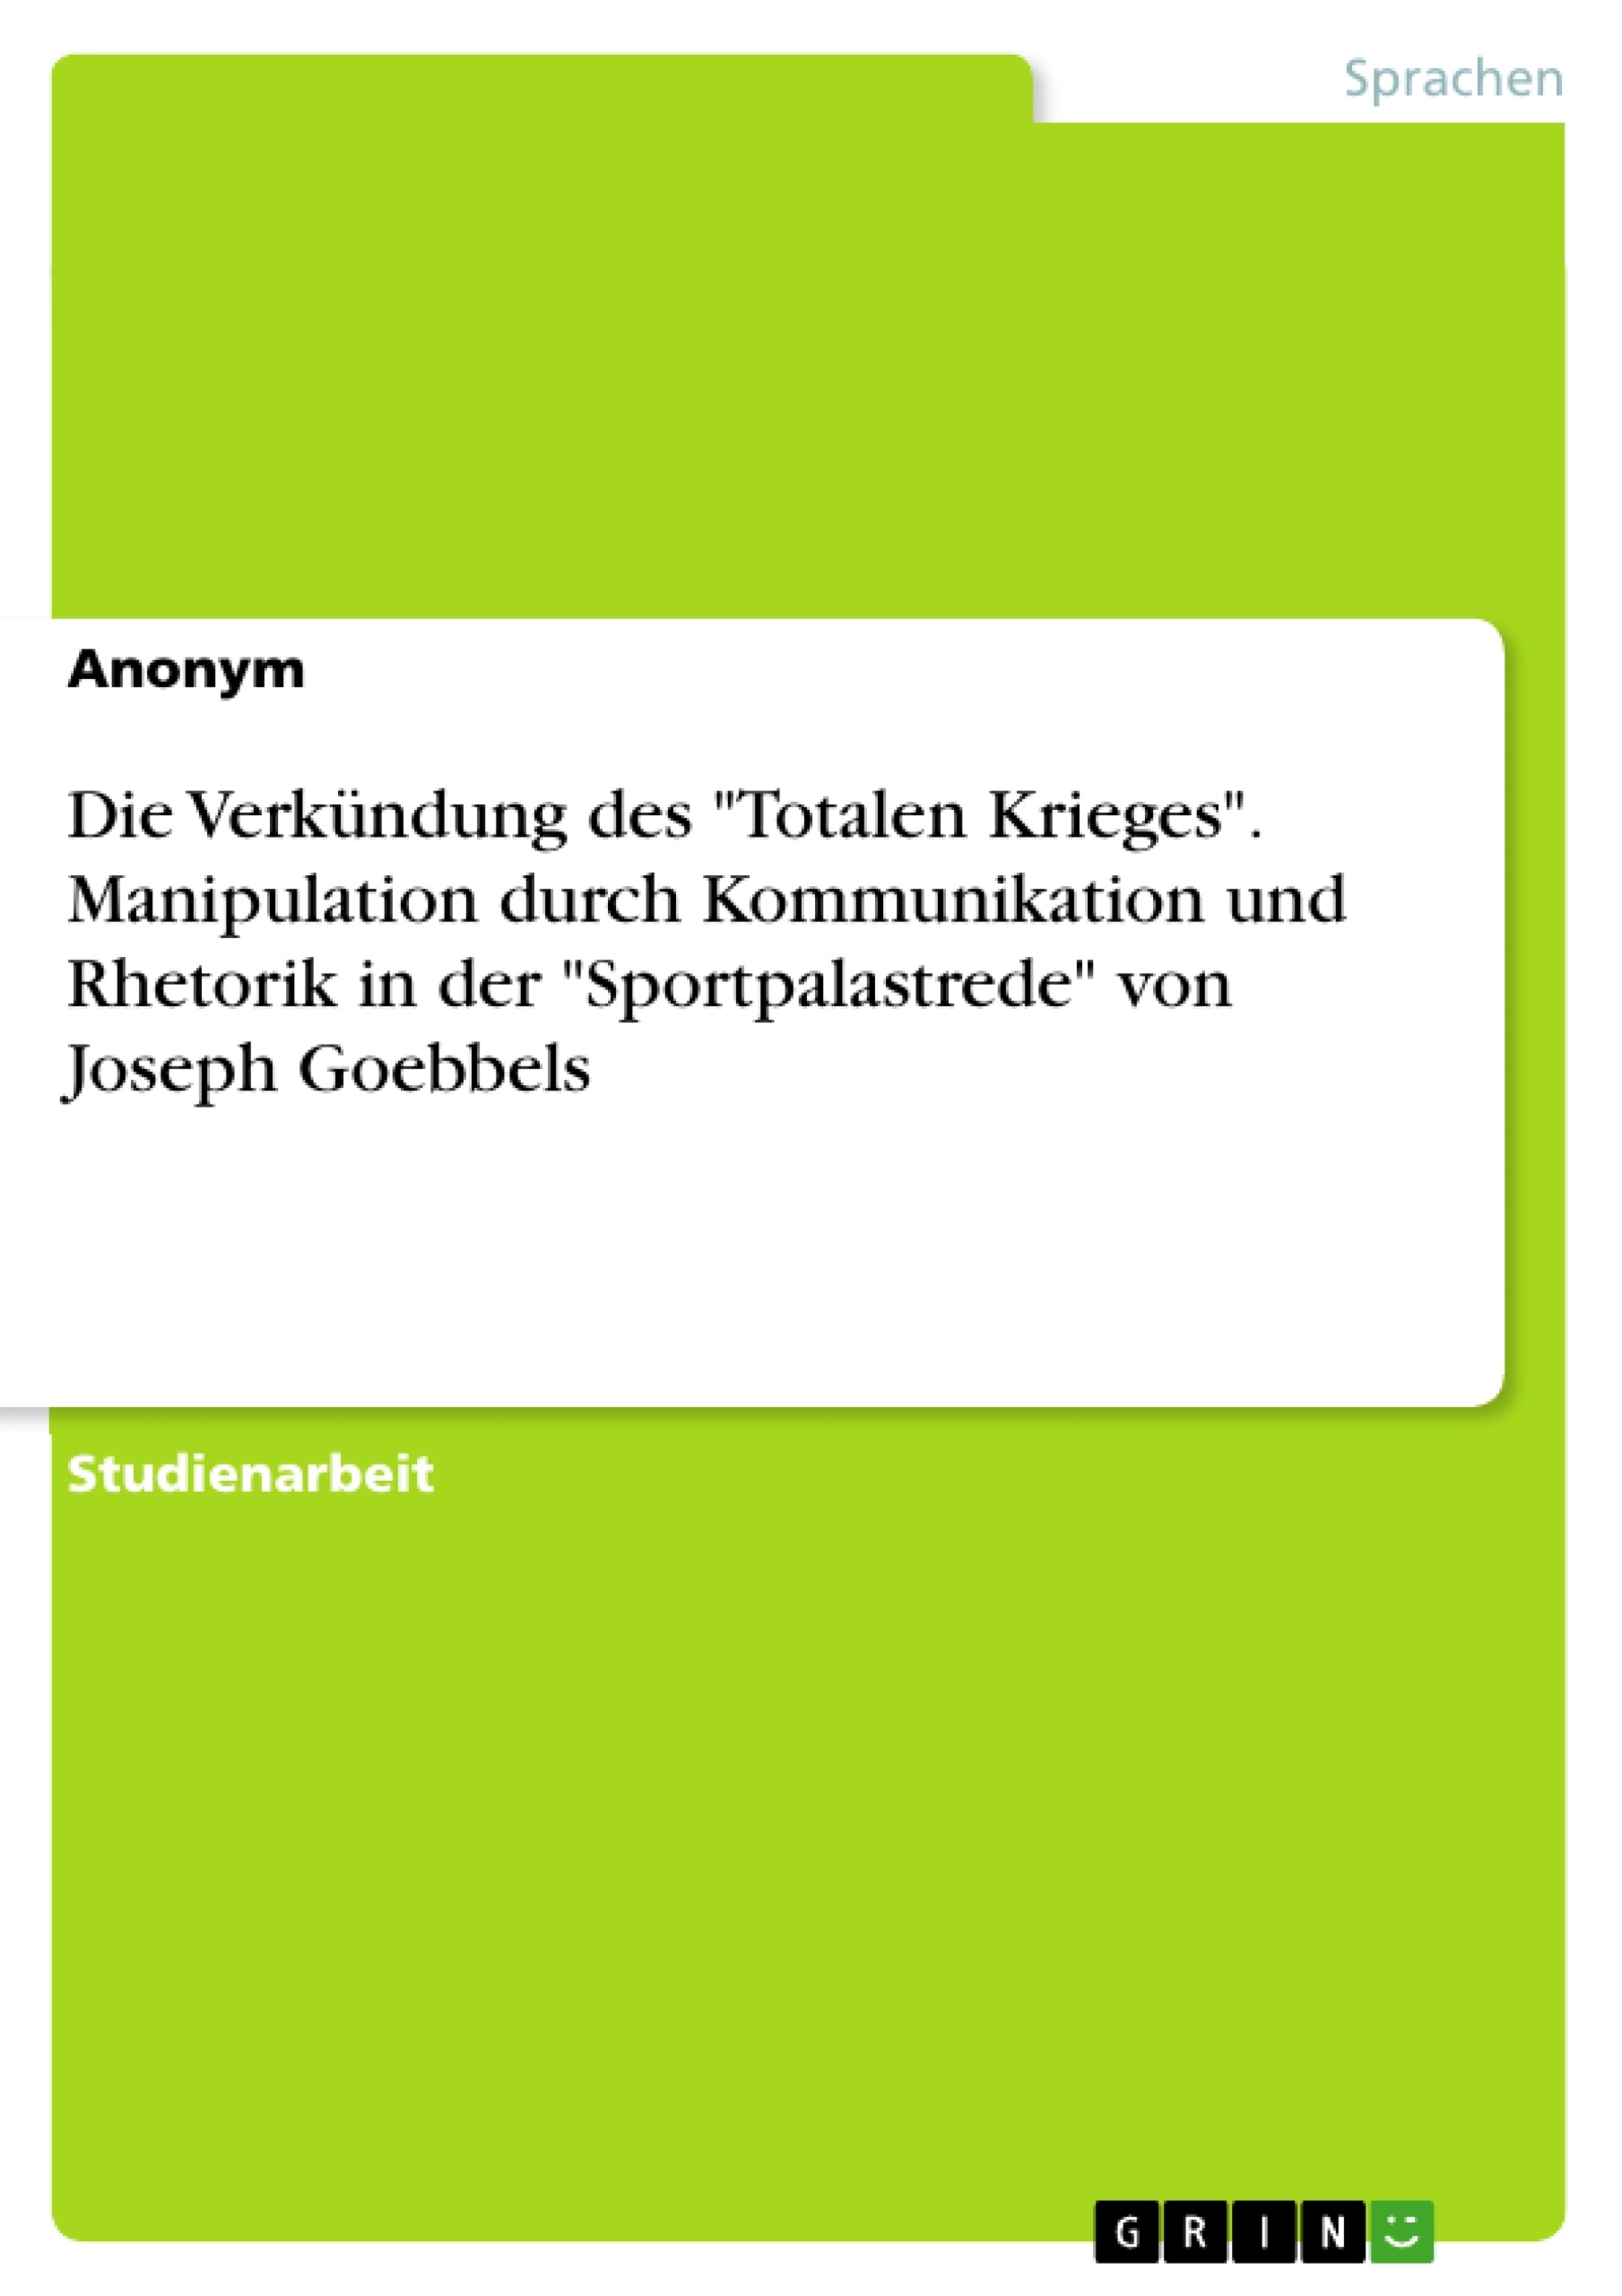 Title: Die Verkündung des "Totalen Krieges". Manipulation durch Kommunikation und Rhetorik in der "Sportpalastrede" von Joseph Goebbels